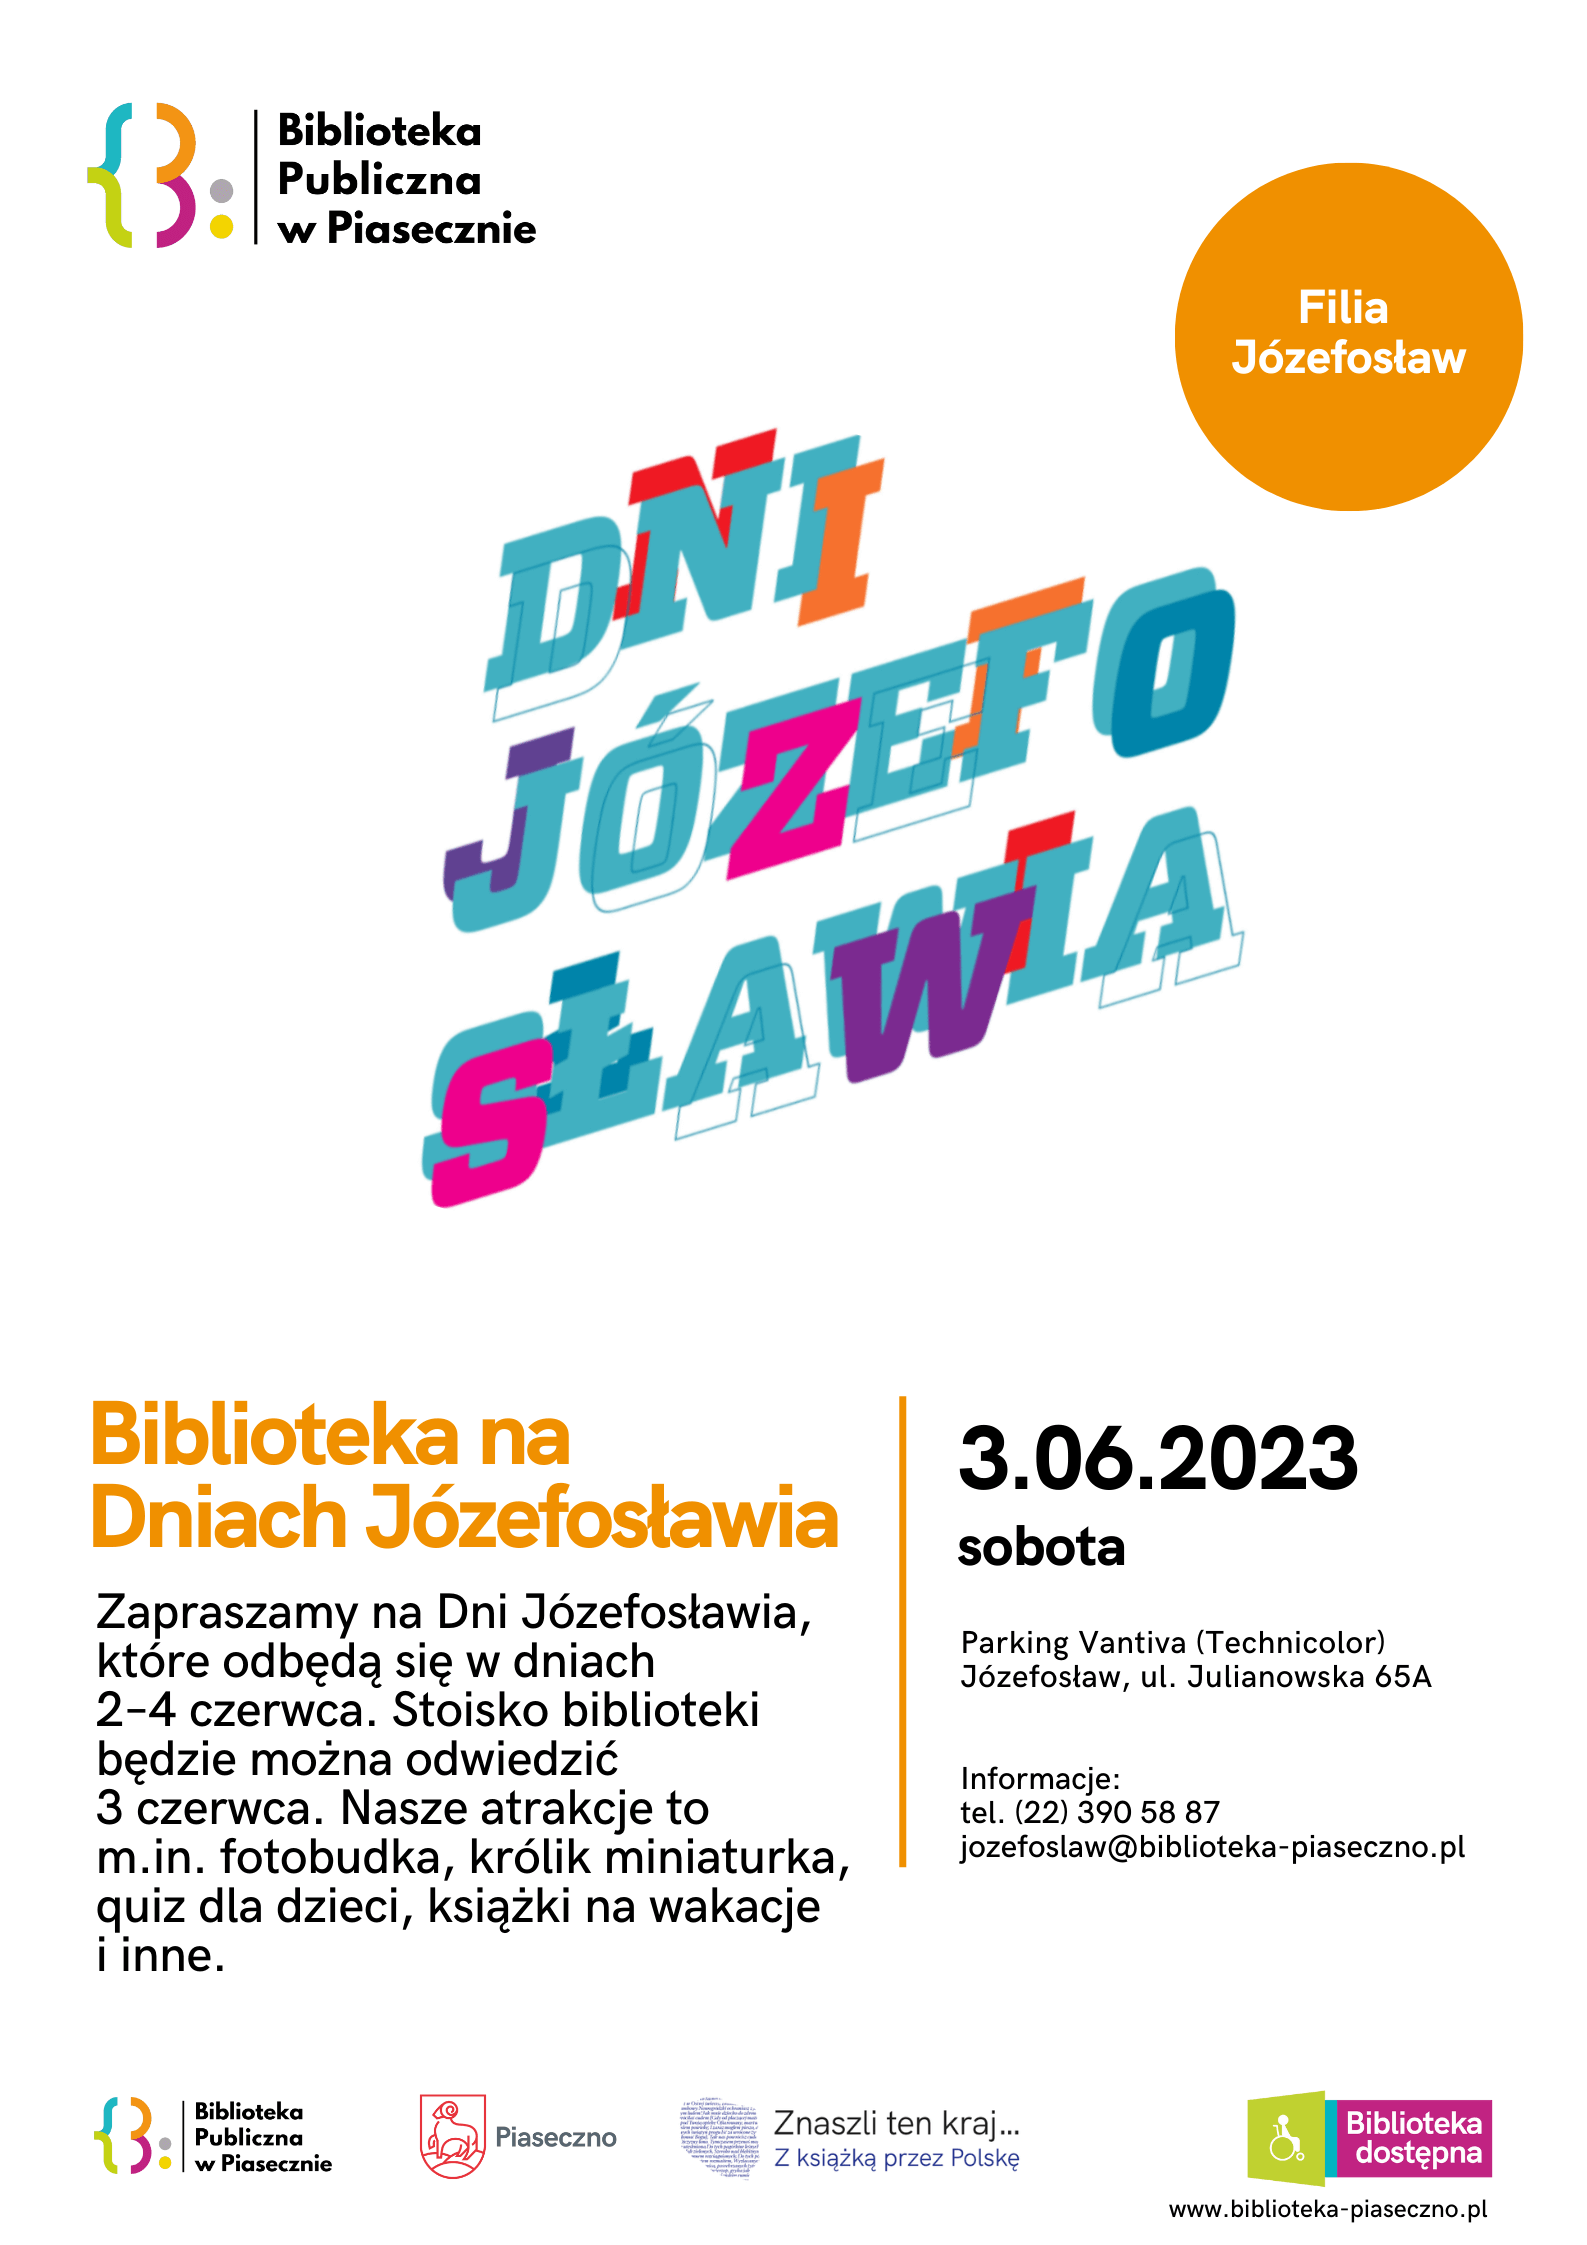 Biblioteka na Dniach Jozefoslawia – plakat informacyjny